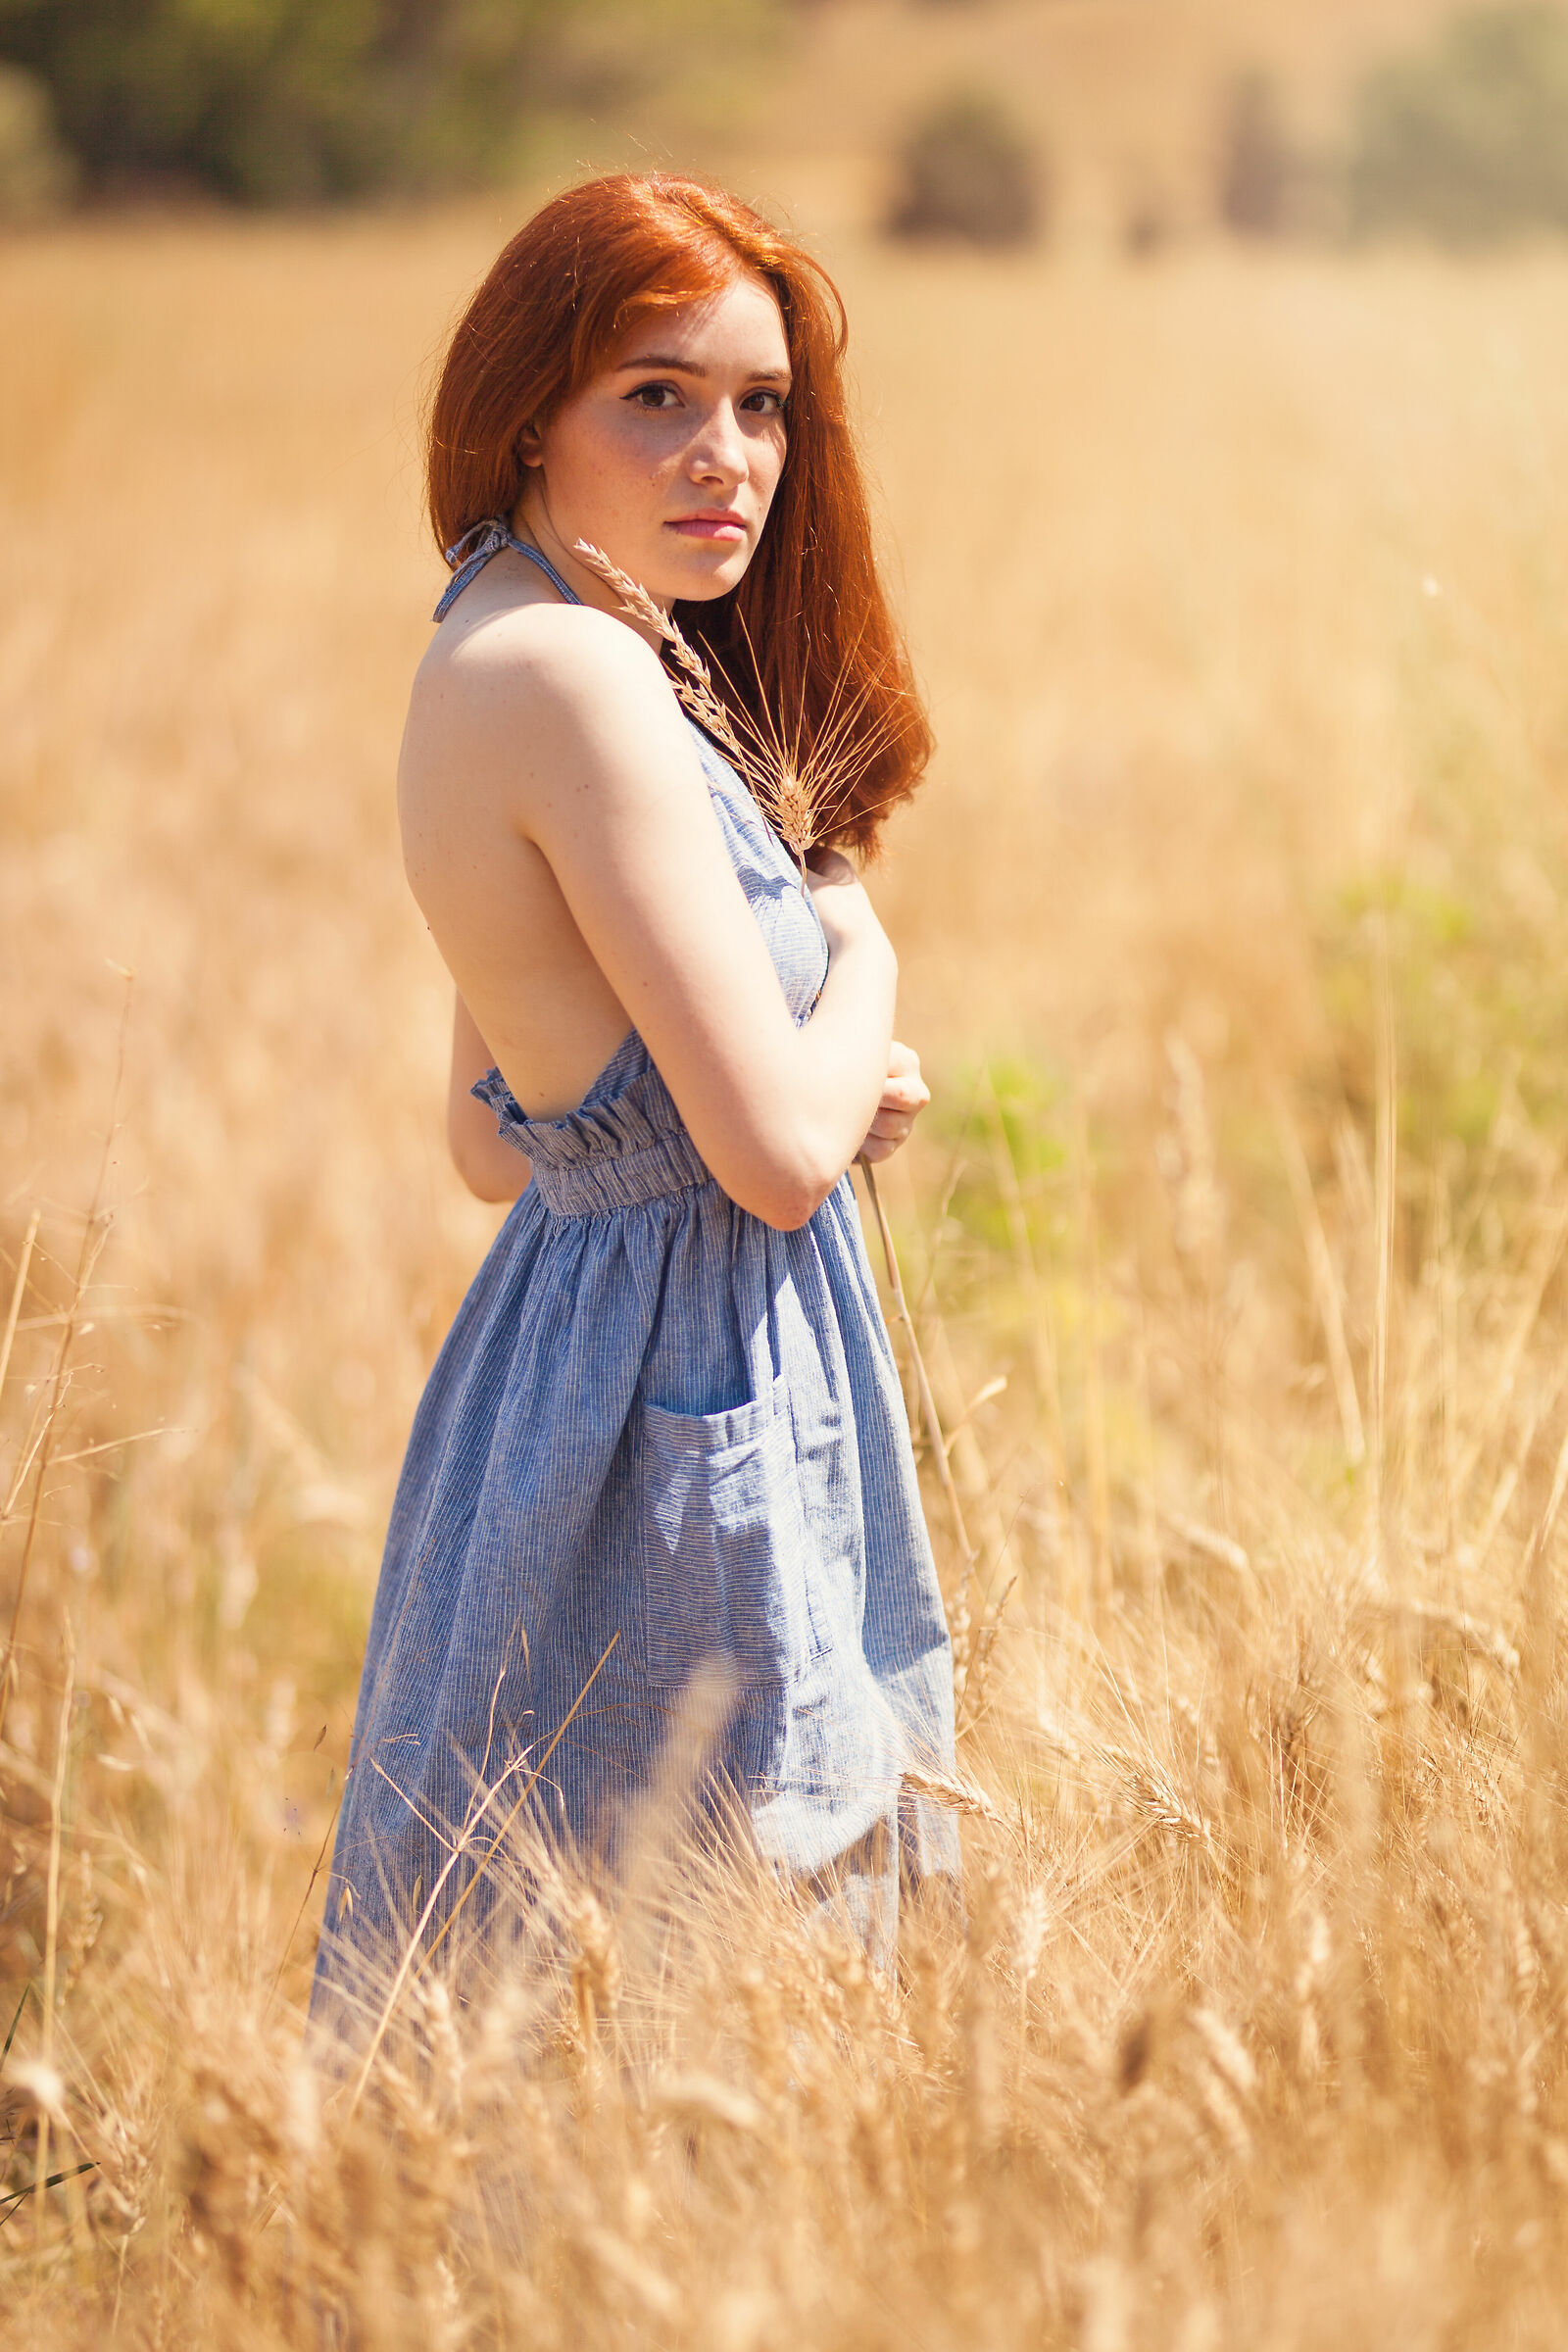 Elena, in a corn field...